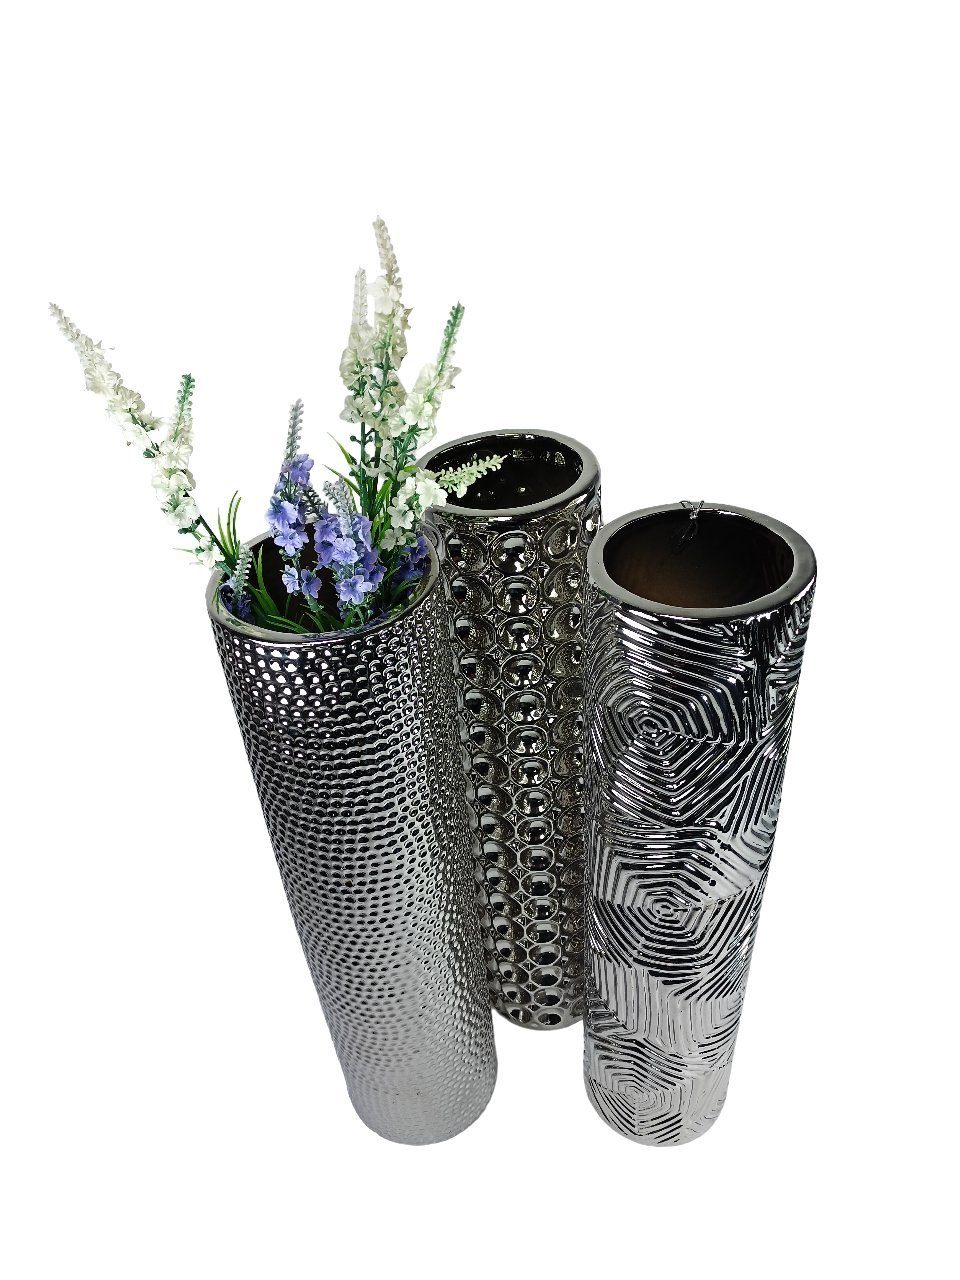 Keramik Wohnzimmer Silber GlasArt Schöne Blumenvase Dekovase Deko-Vase edel 50x12cm